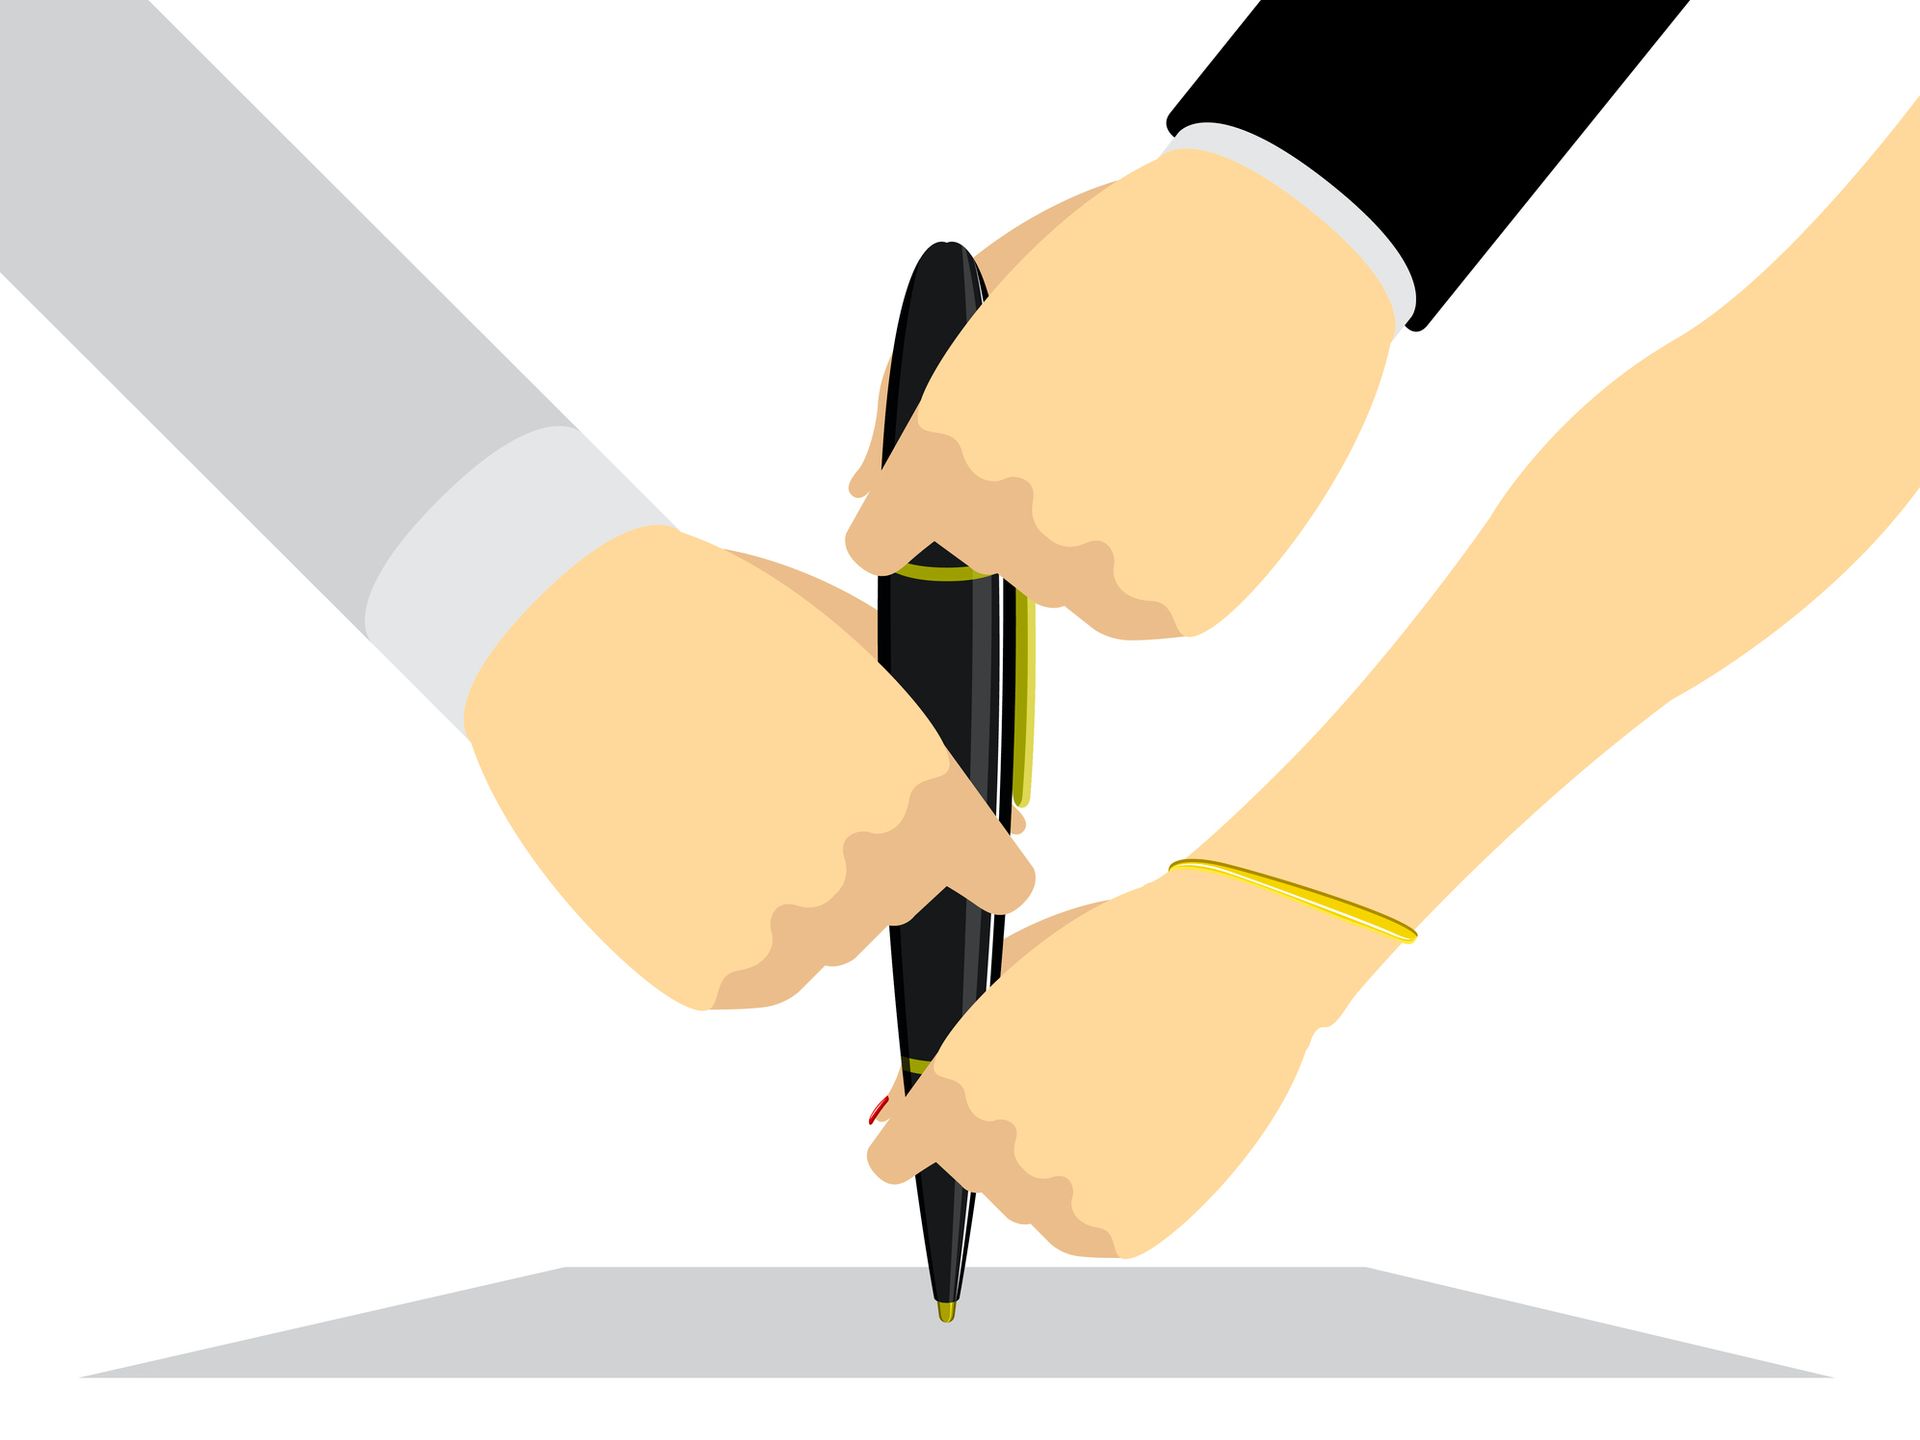 Drie handen houden een vulpen vast ter illustratie dat één pen verschillende schrijfstijlen kan produceren.